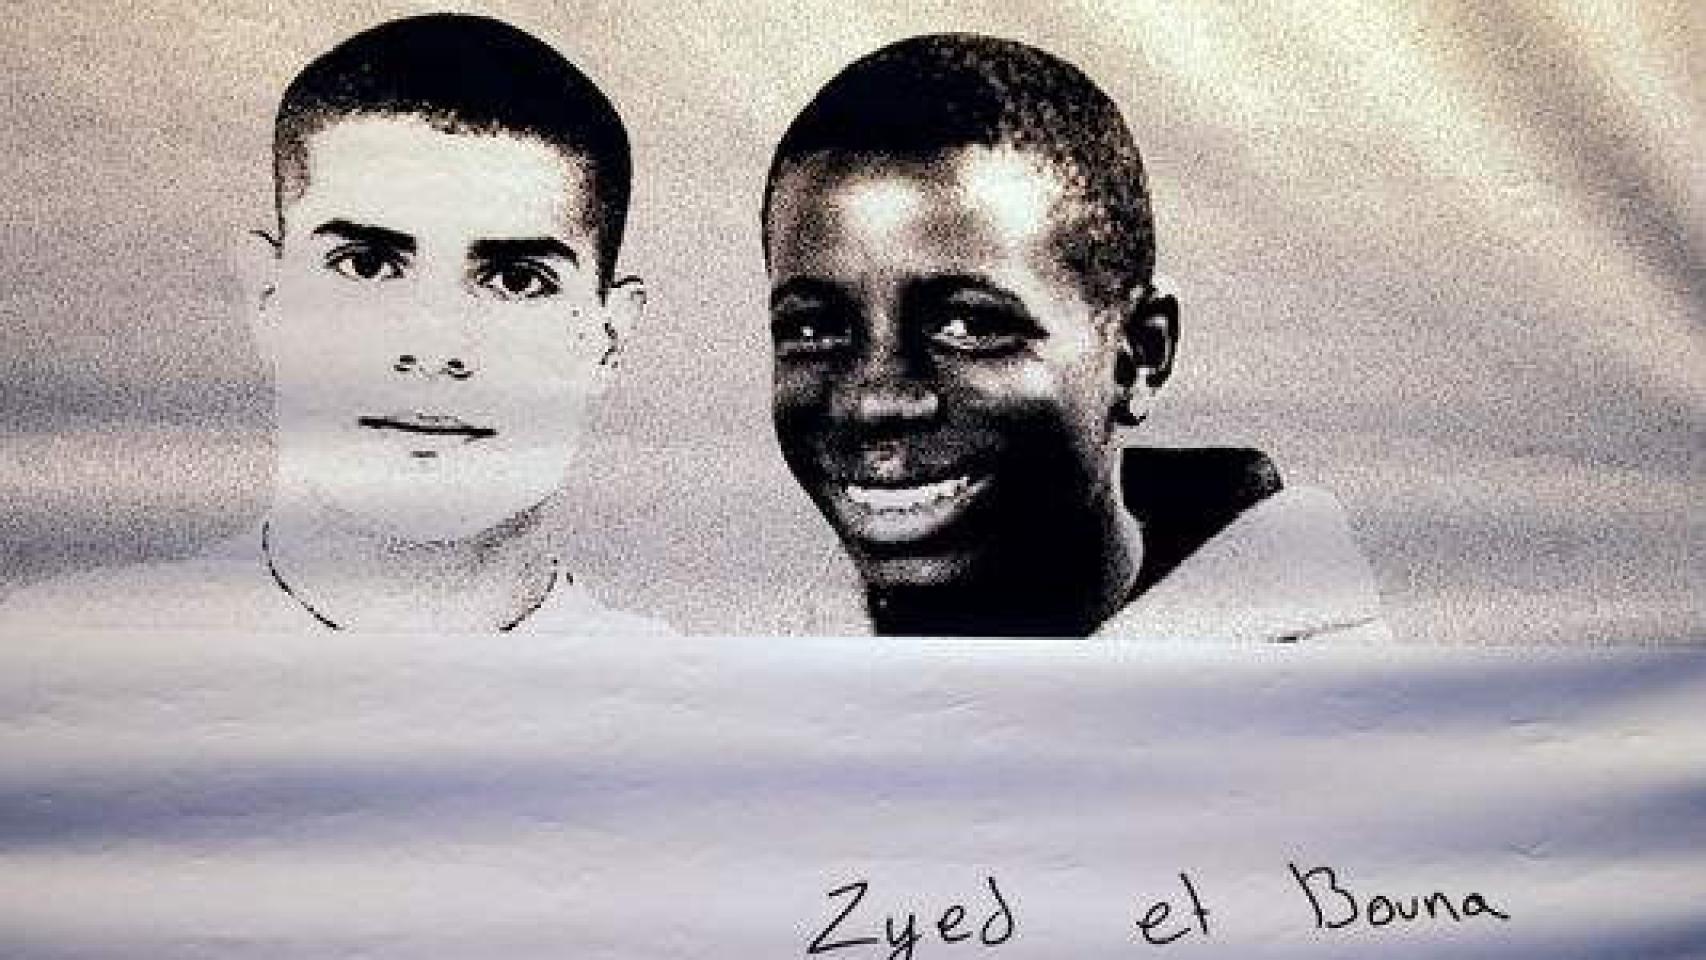 Póster con las caras de Zyed Benna y Bouna Traoré, los jóvenes muertos en 2005.